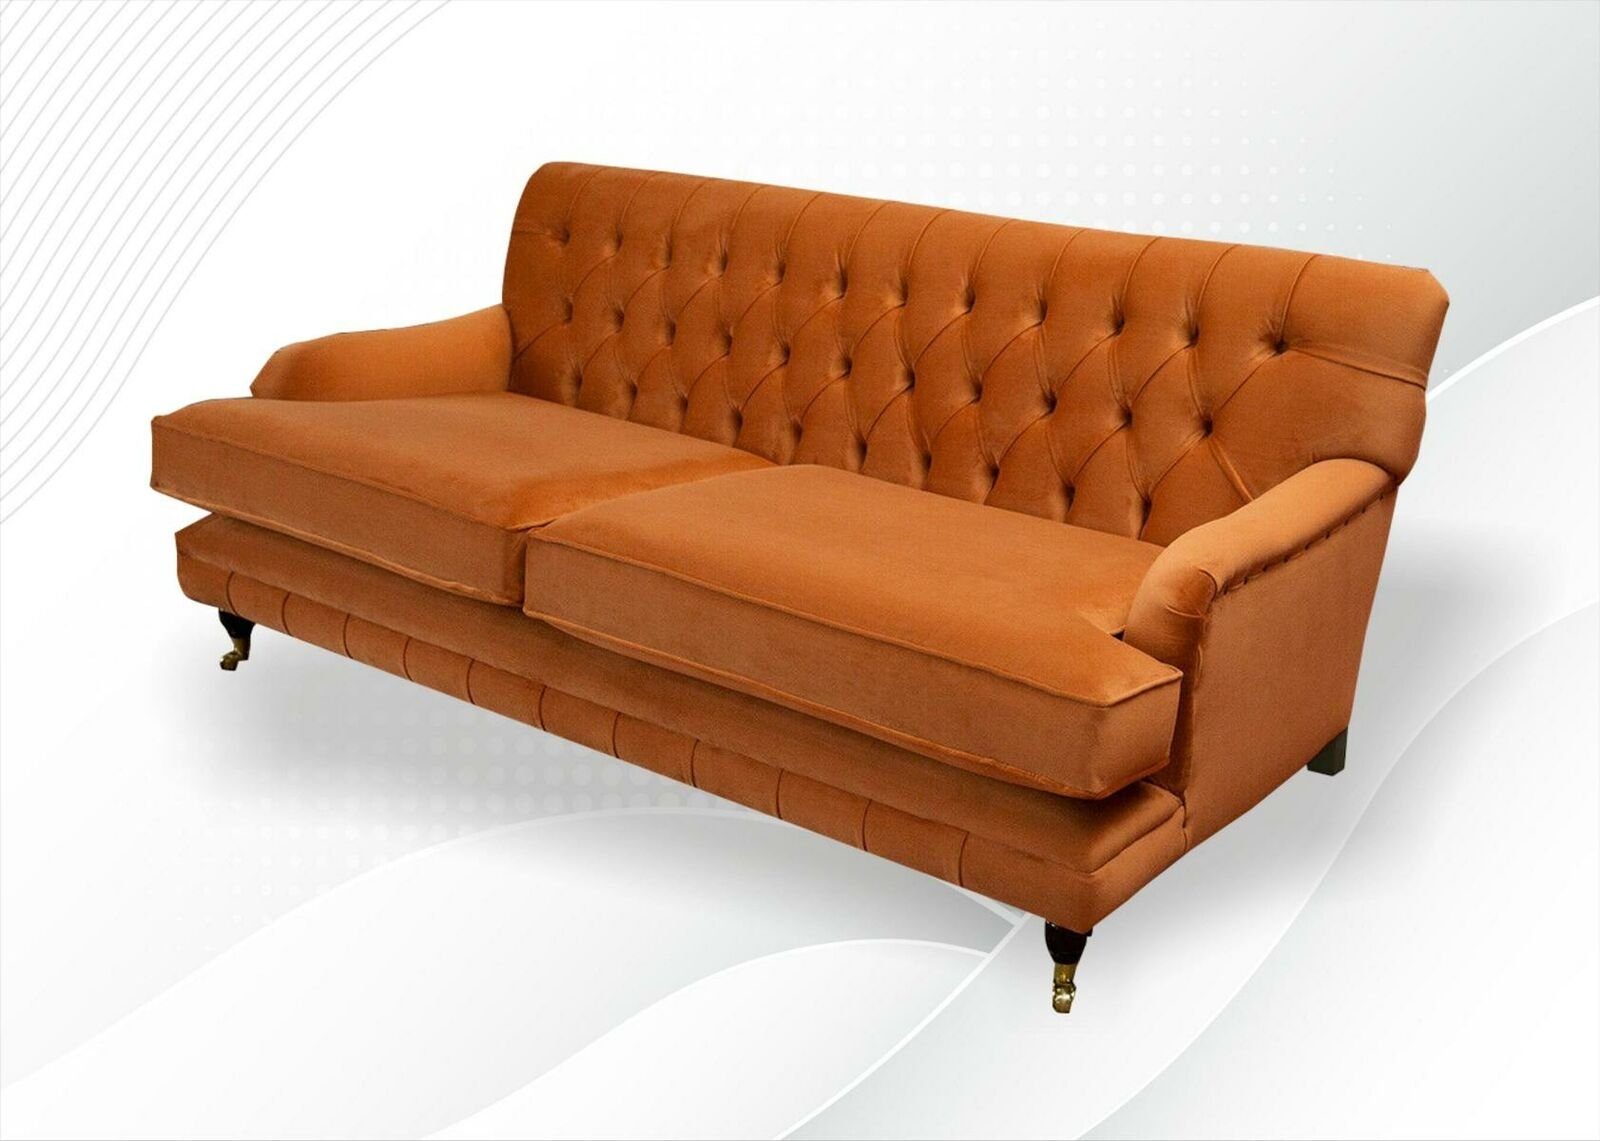 JVmoebel Chesterfield-Sofa, Chesterfield Couchen Design Polster Wohnzimmer Sofas Sofa Textil Neu Stoff Orange Gelb